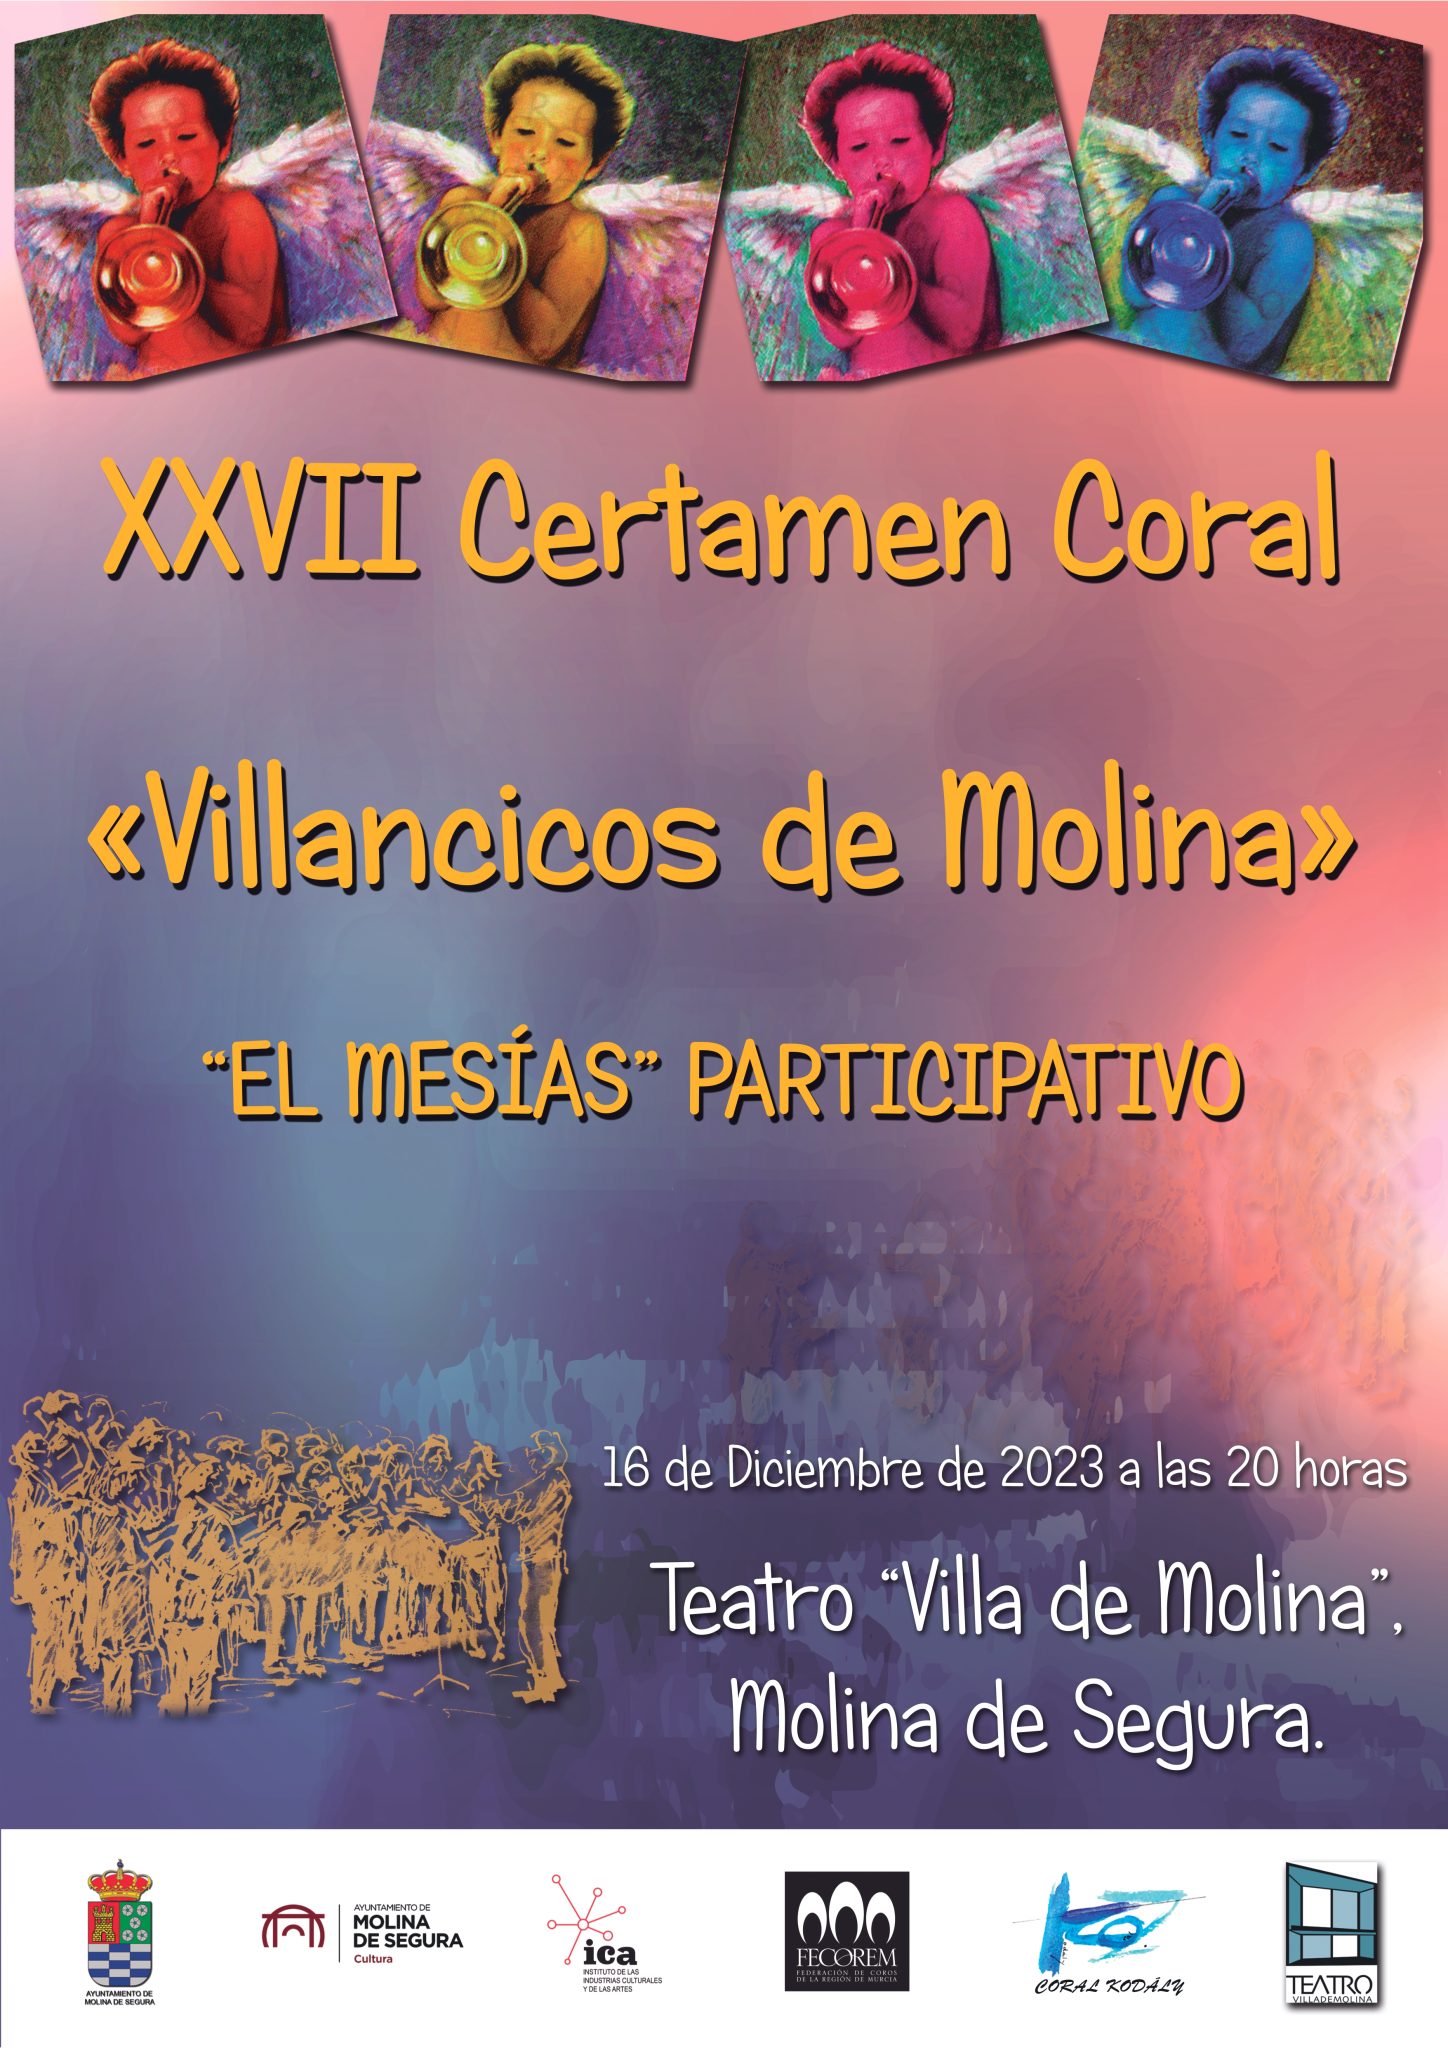 XXVII Certamen Coral de Villancicos de Molina de Segura